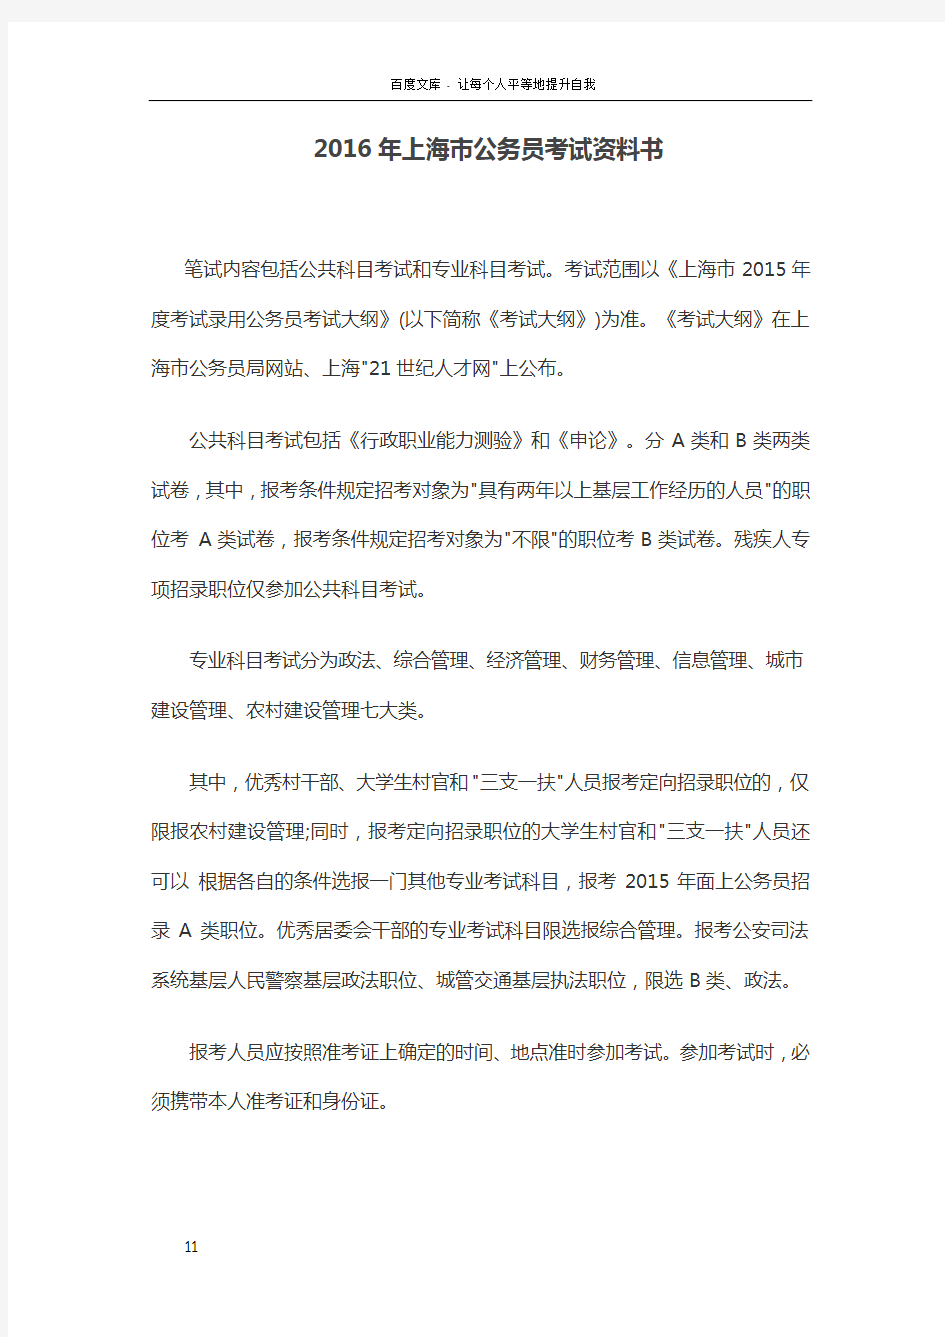 2016年上海市公务员考试资料书